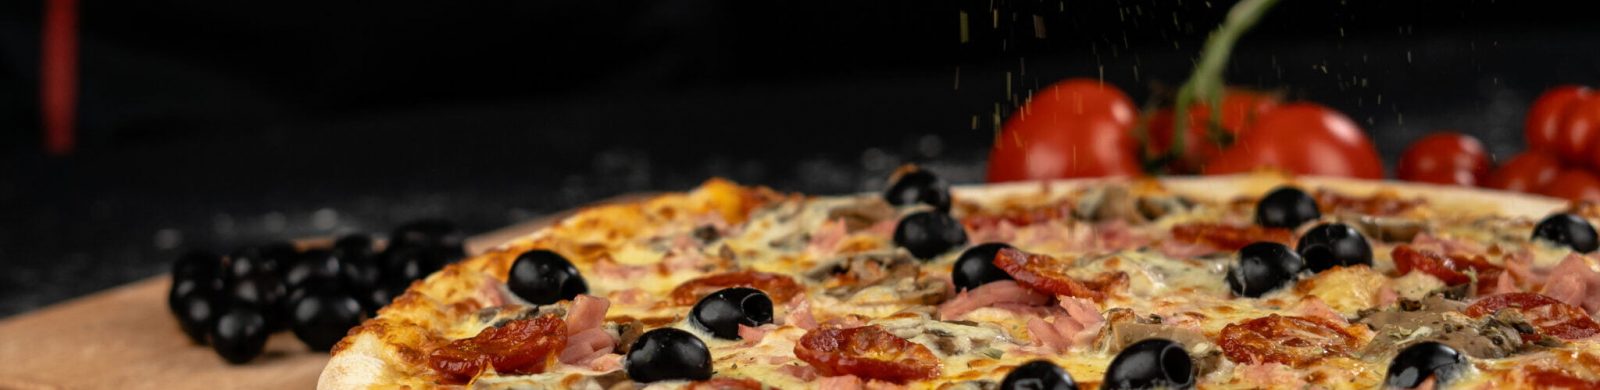 Mimos Pizza | Restaurante em Bragança e Paredes